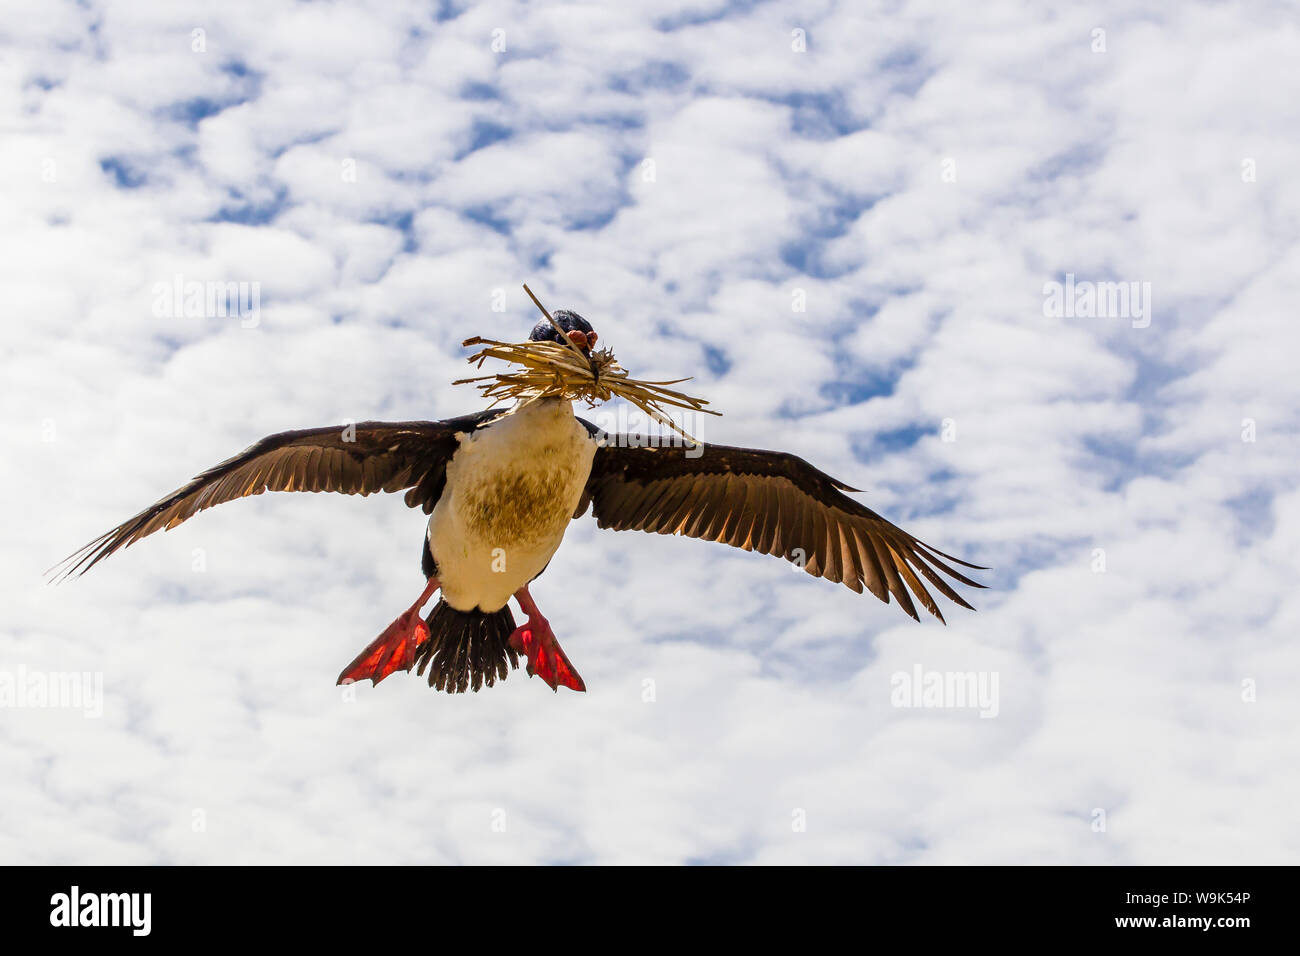 Il marangone dal ciuffo imperiale (Phalacrocorax atriceps albiventer) in volo, nuova isola, Isole Falkland, Sud Atlantico, Sud America Foto Stock